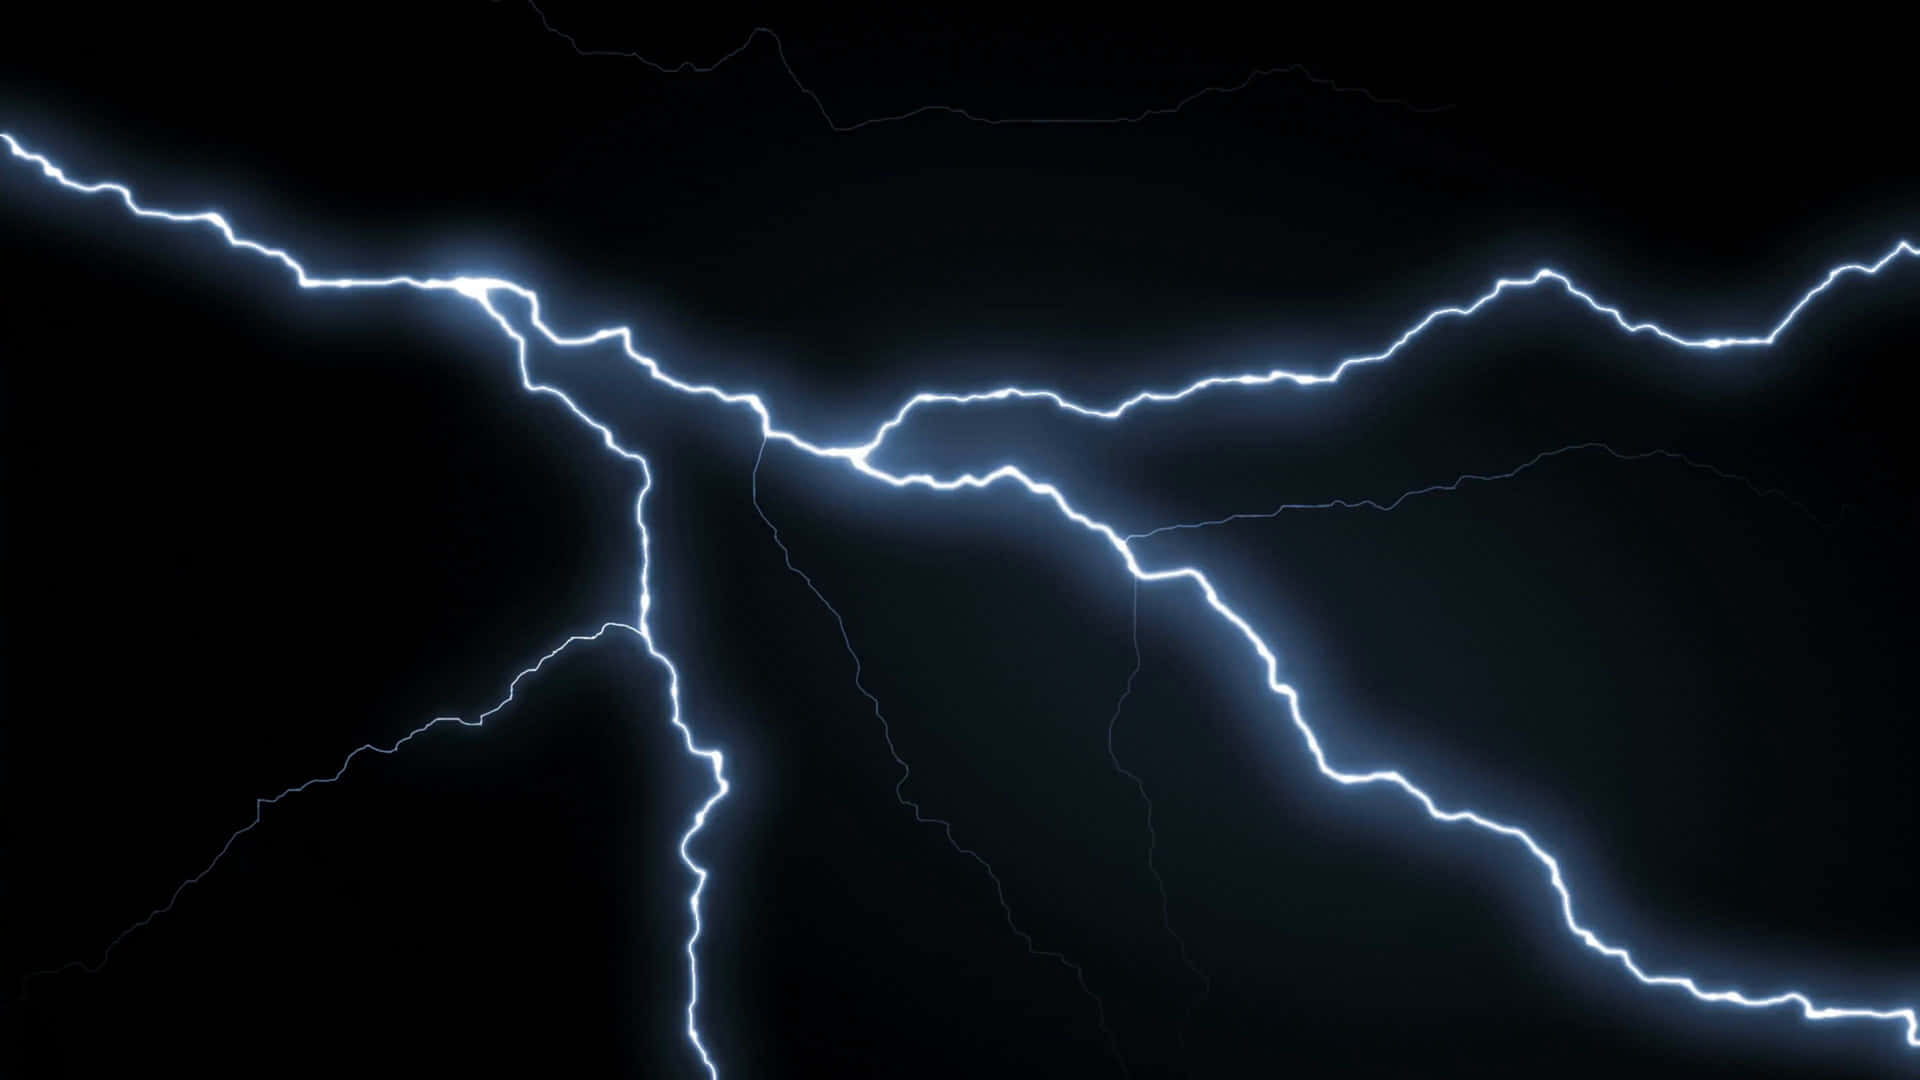 Intense lightning bolt strikes in the sky